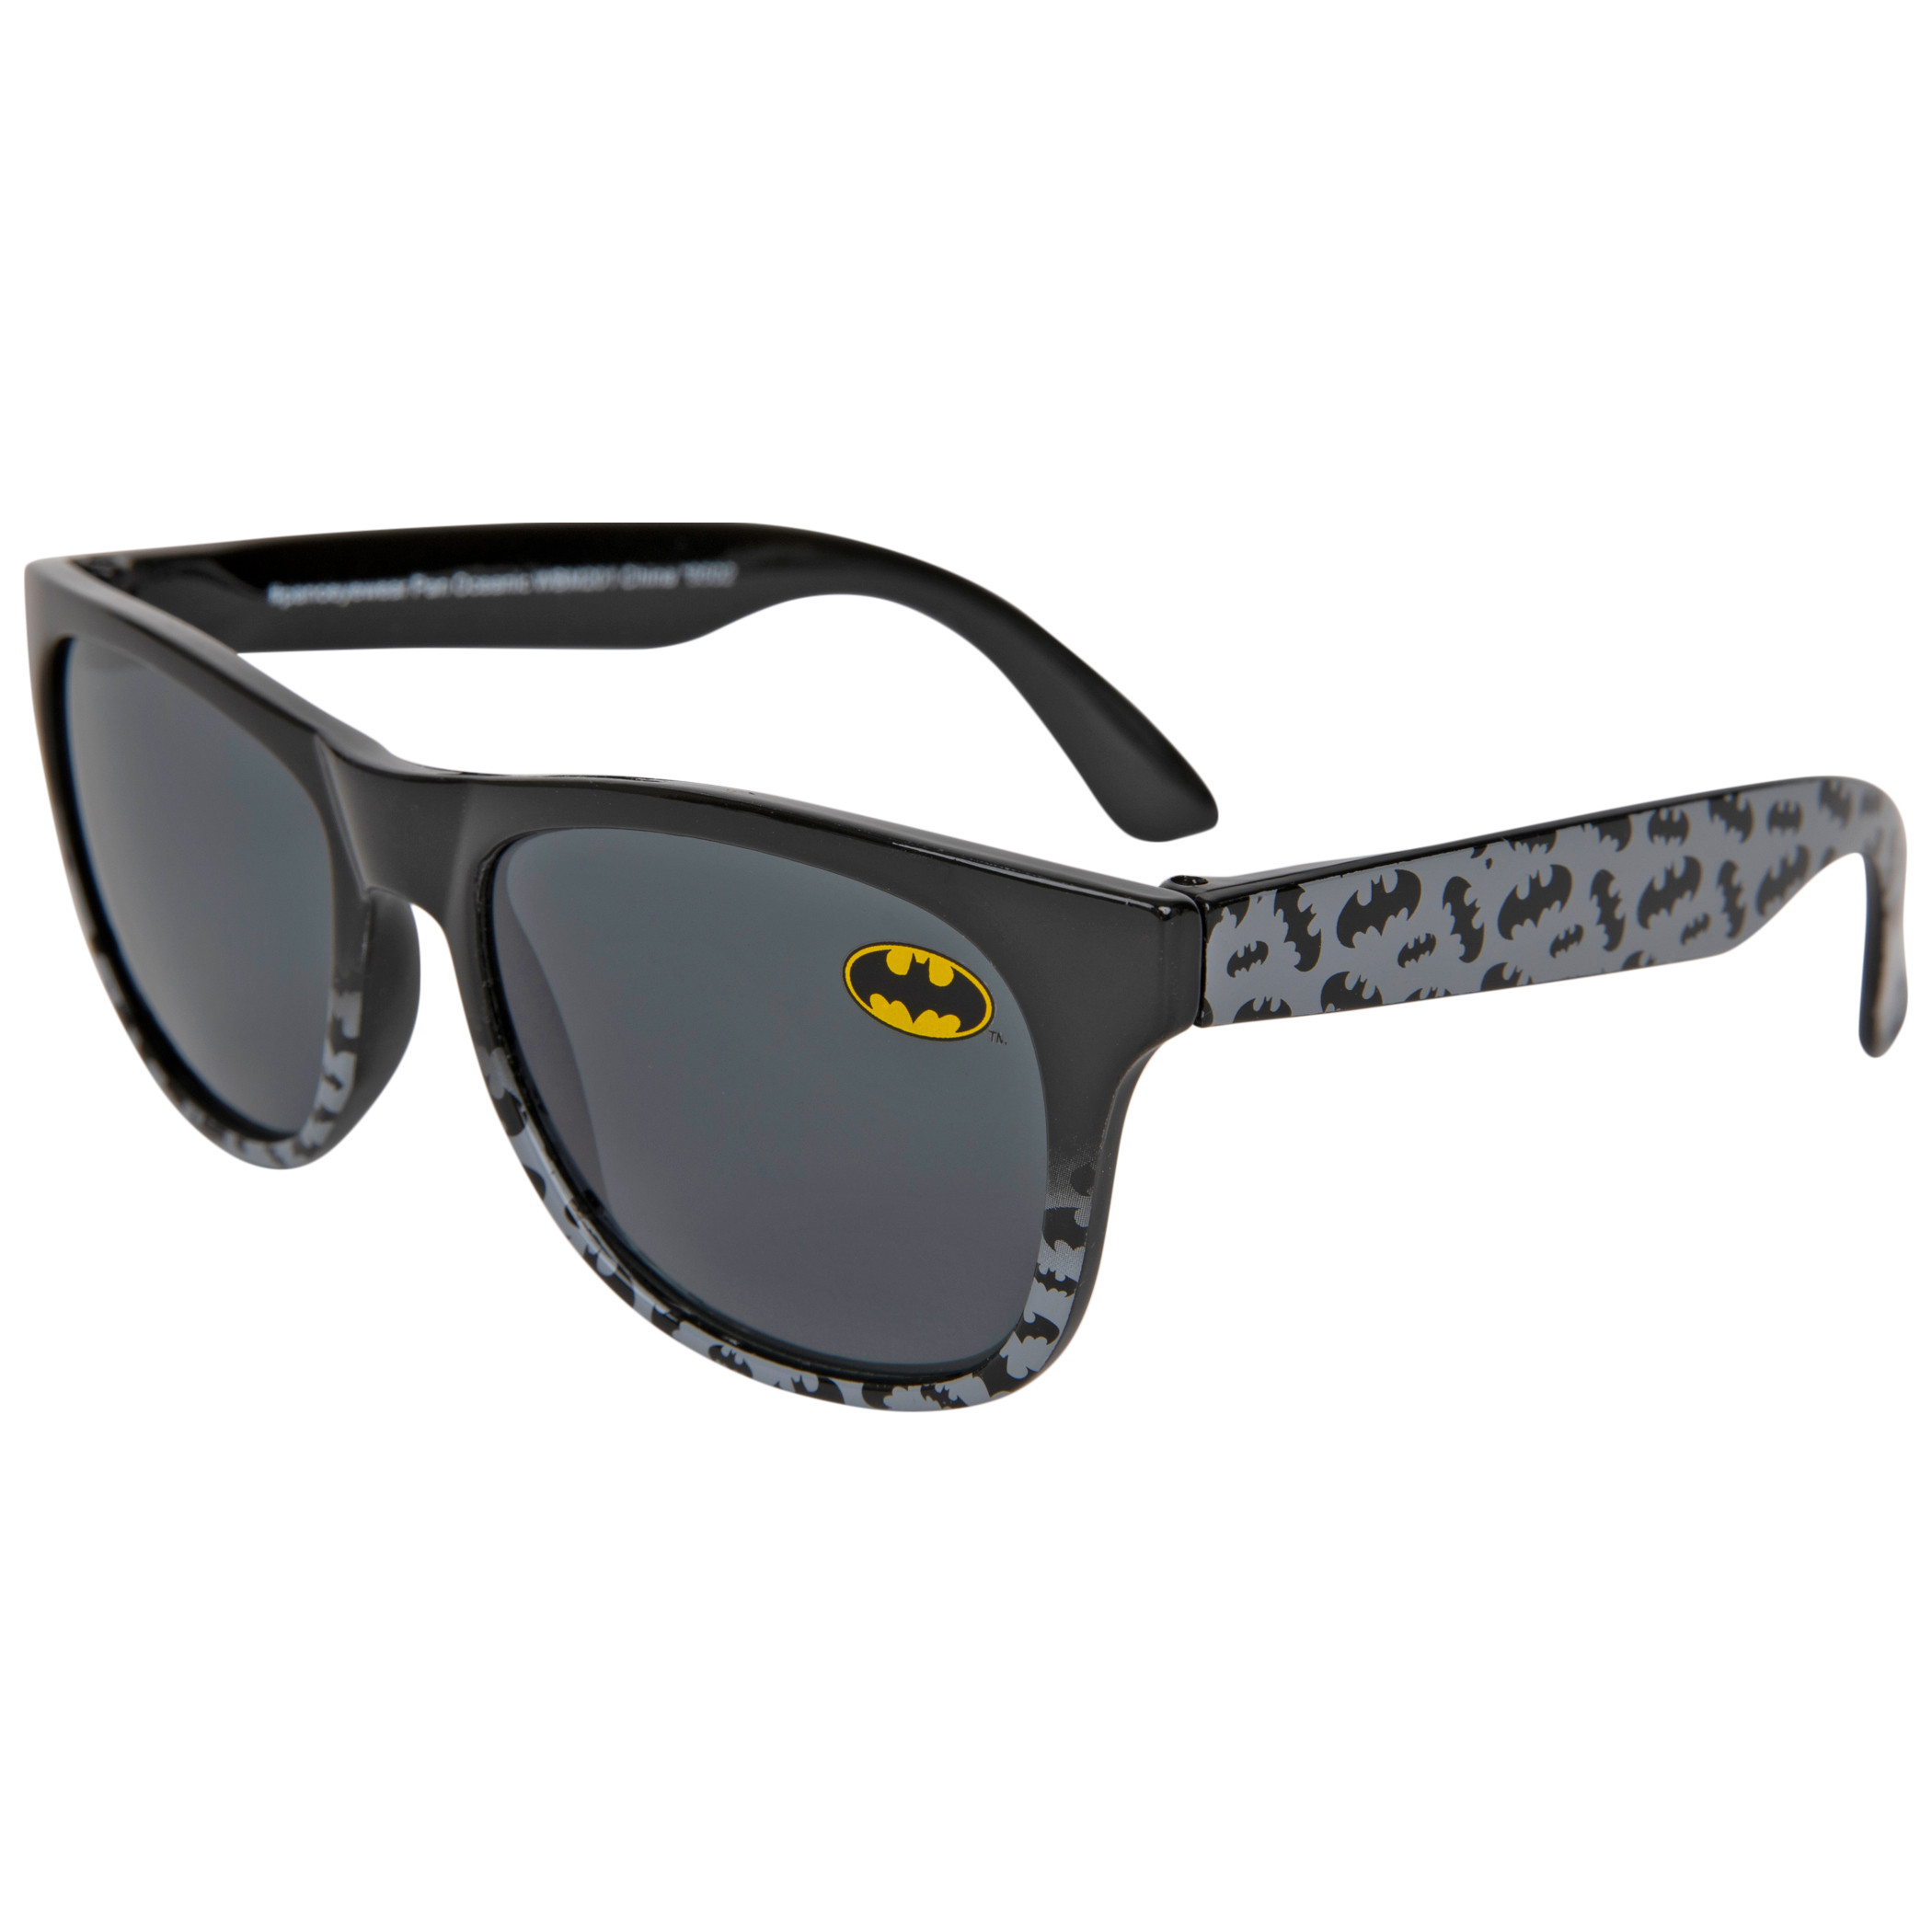 DC Comics Batman Bat Symbol Classic Kids Wallet and Sunglass Set